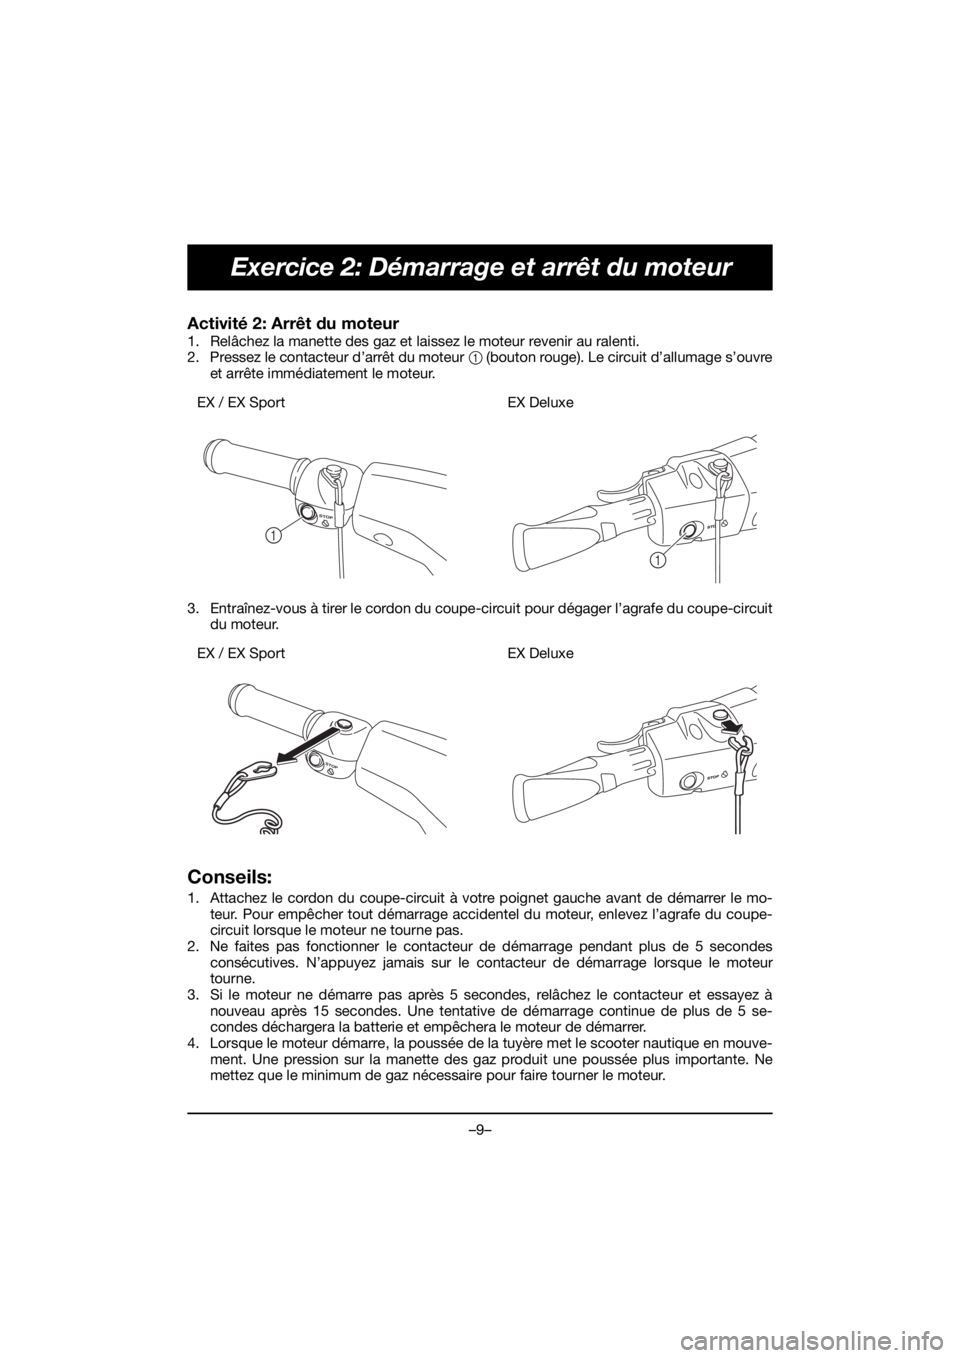 YAMAHA EX 2019  Manual de utilização (in Portuguese) –9–
Exercice 2: Démarrage et arrêt du moteur
Activité 2: Arrêt du moteur 
1. Relâchez la manette des gaz et laissez le moteur revenir au ralenti. 
2. Pressez le contacteur d’arrêt du moteu